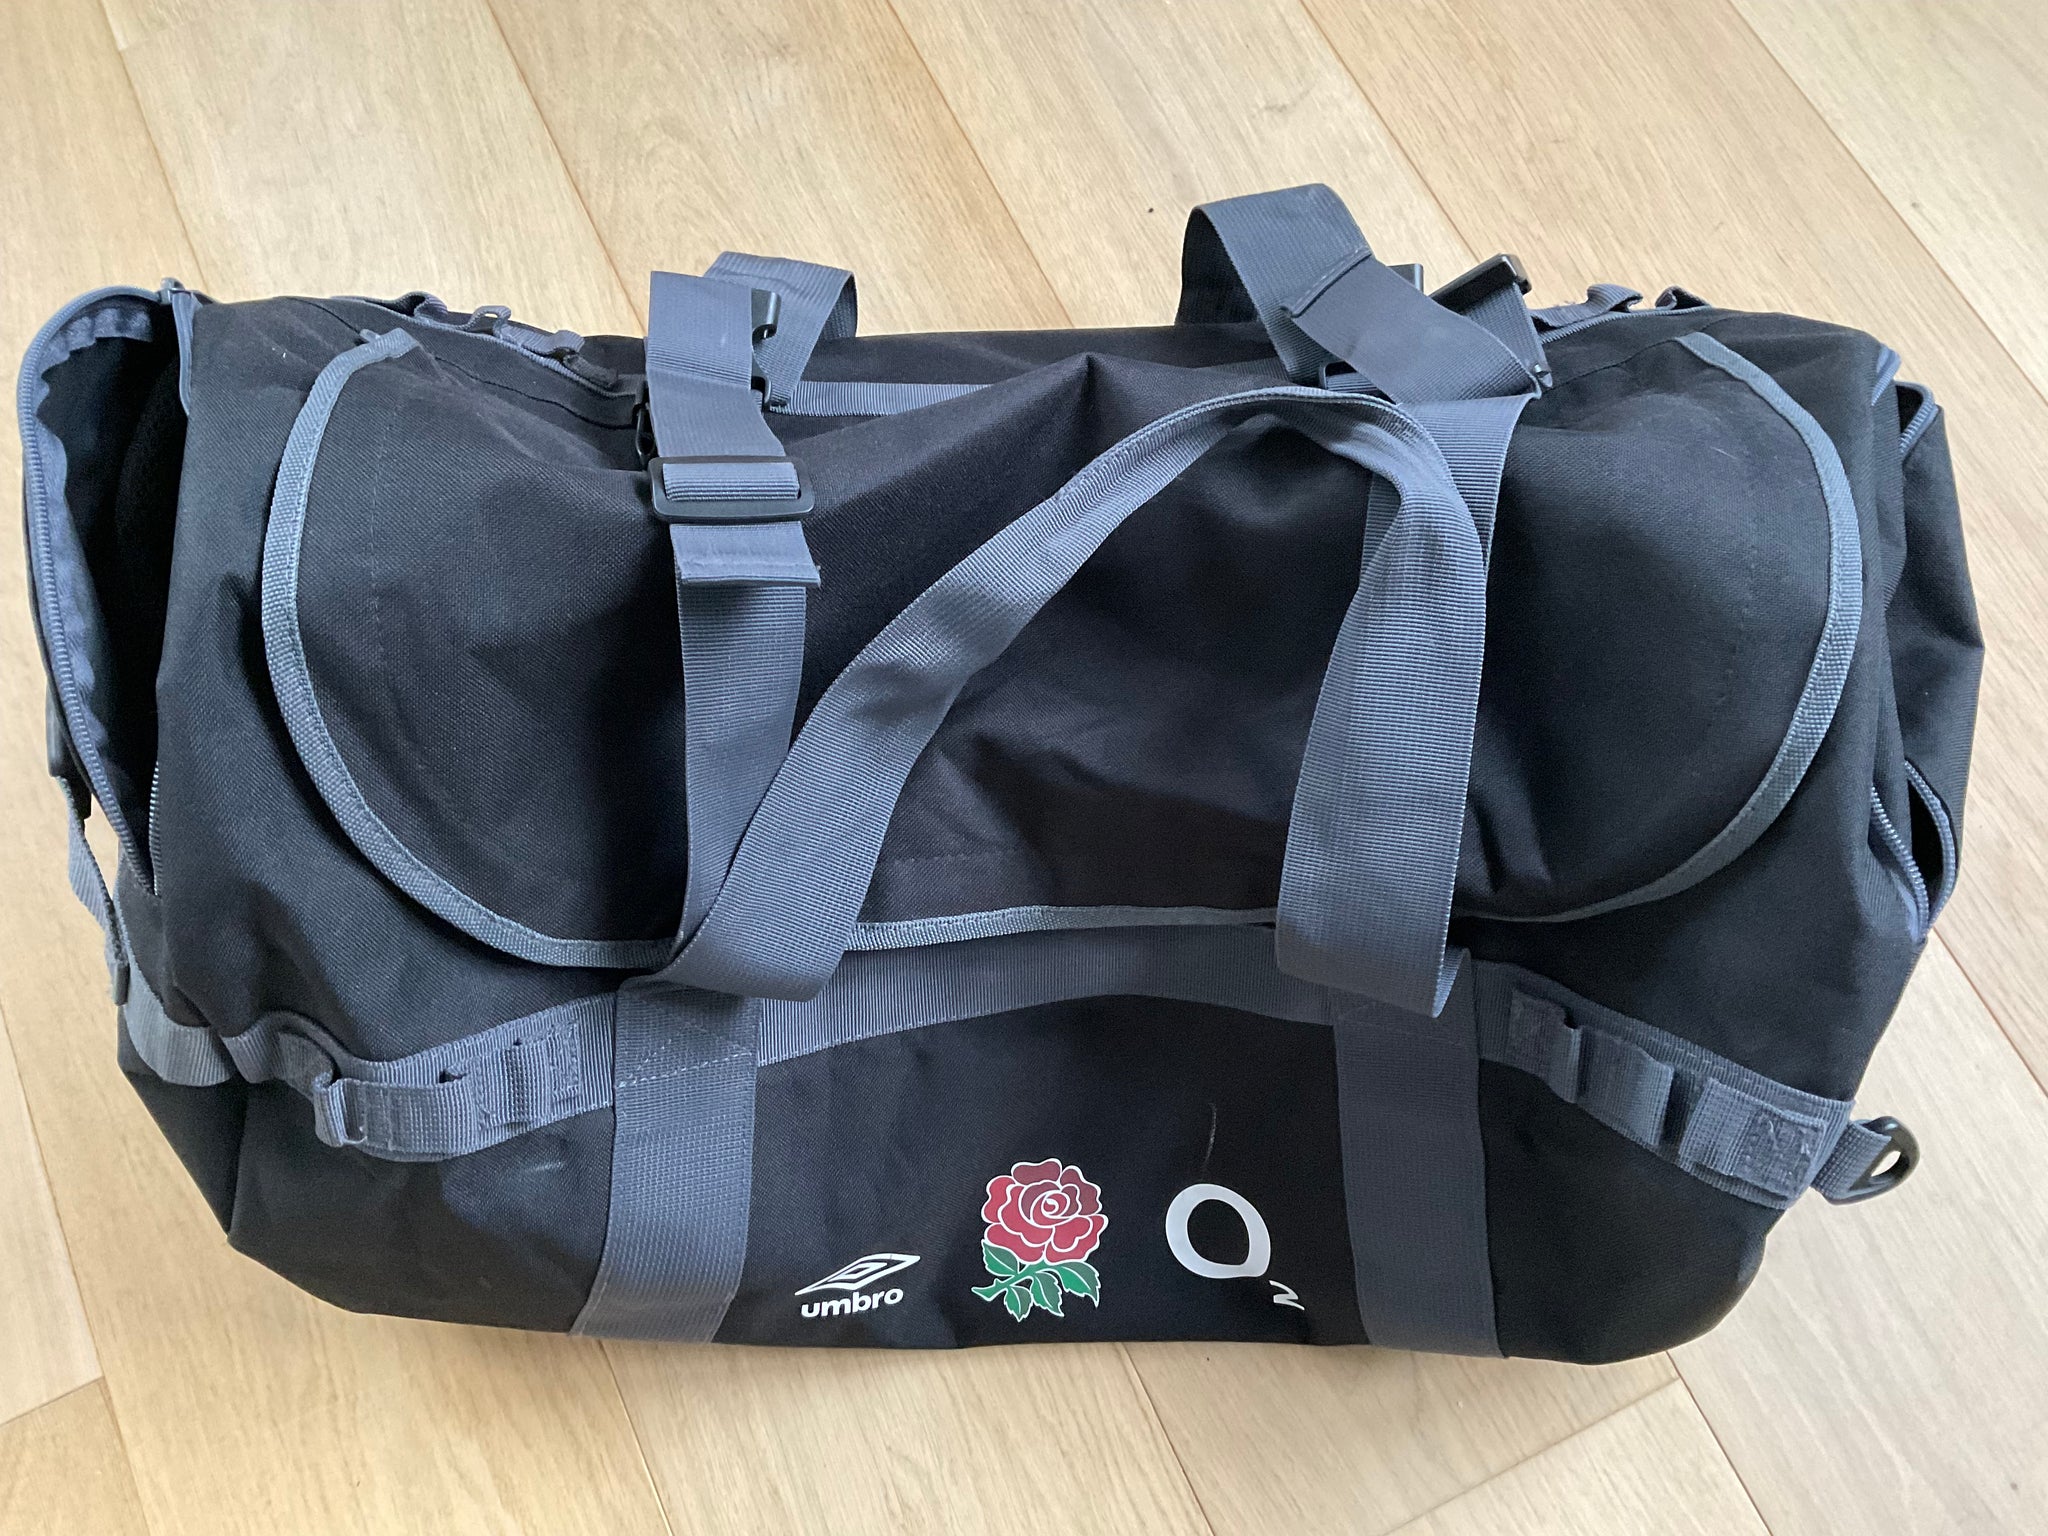 Jamie George - England Rugby Training / Kit Bag [Black & Grey]